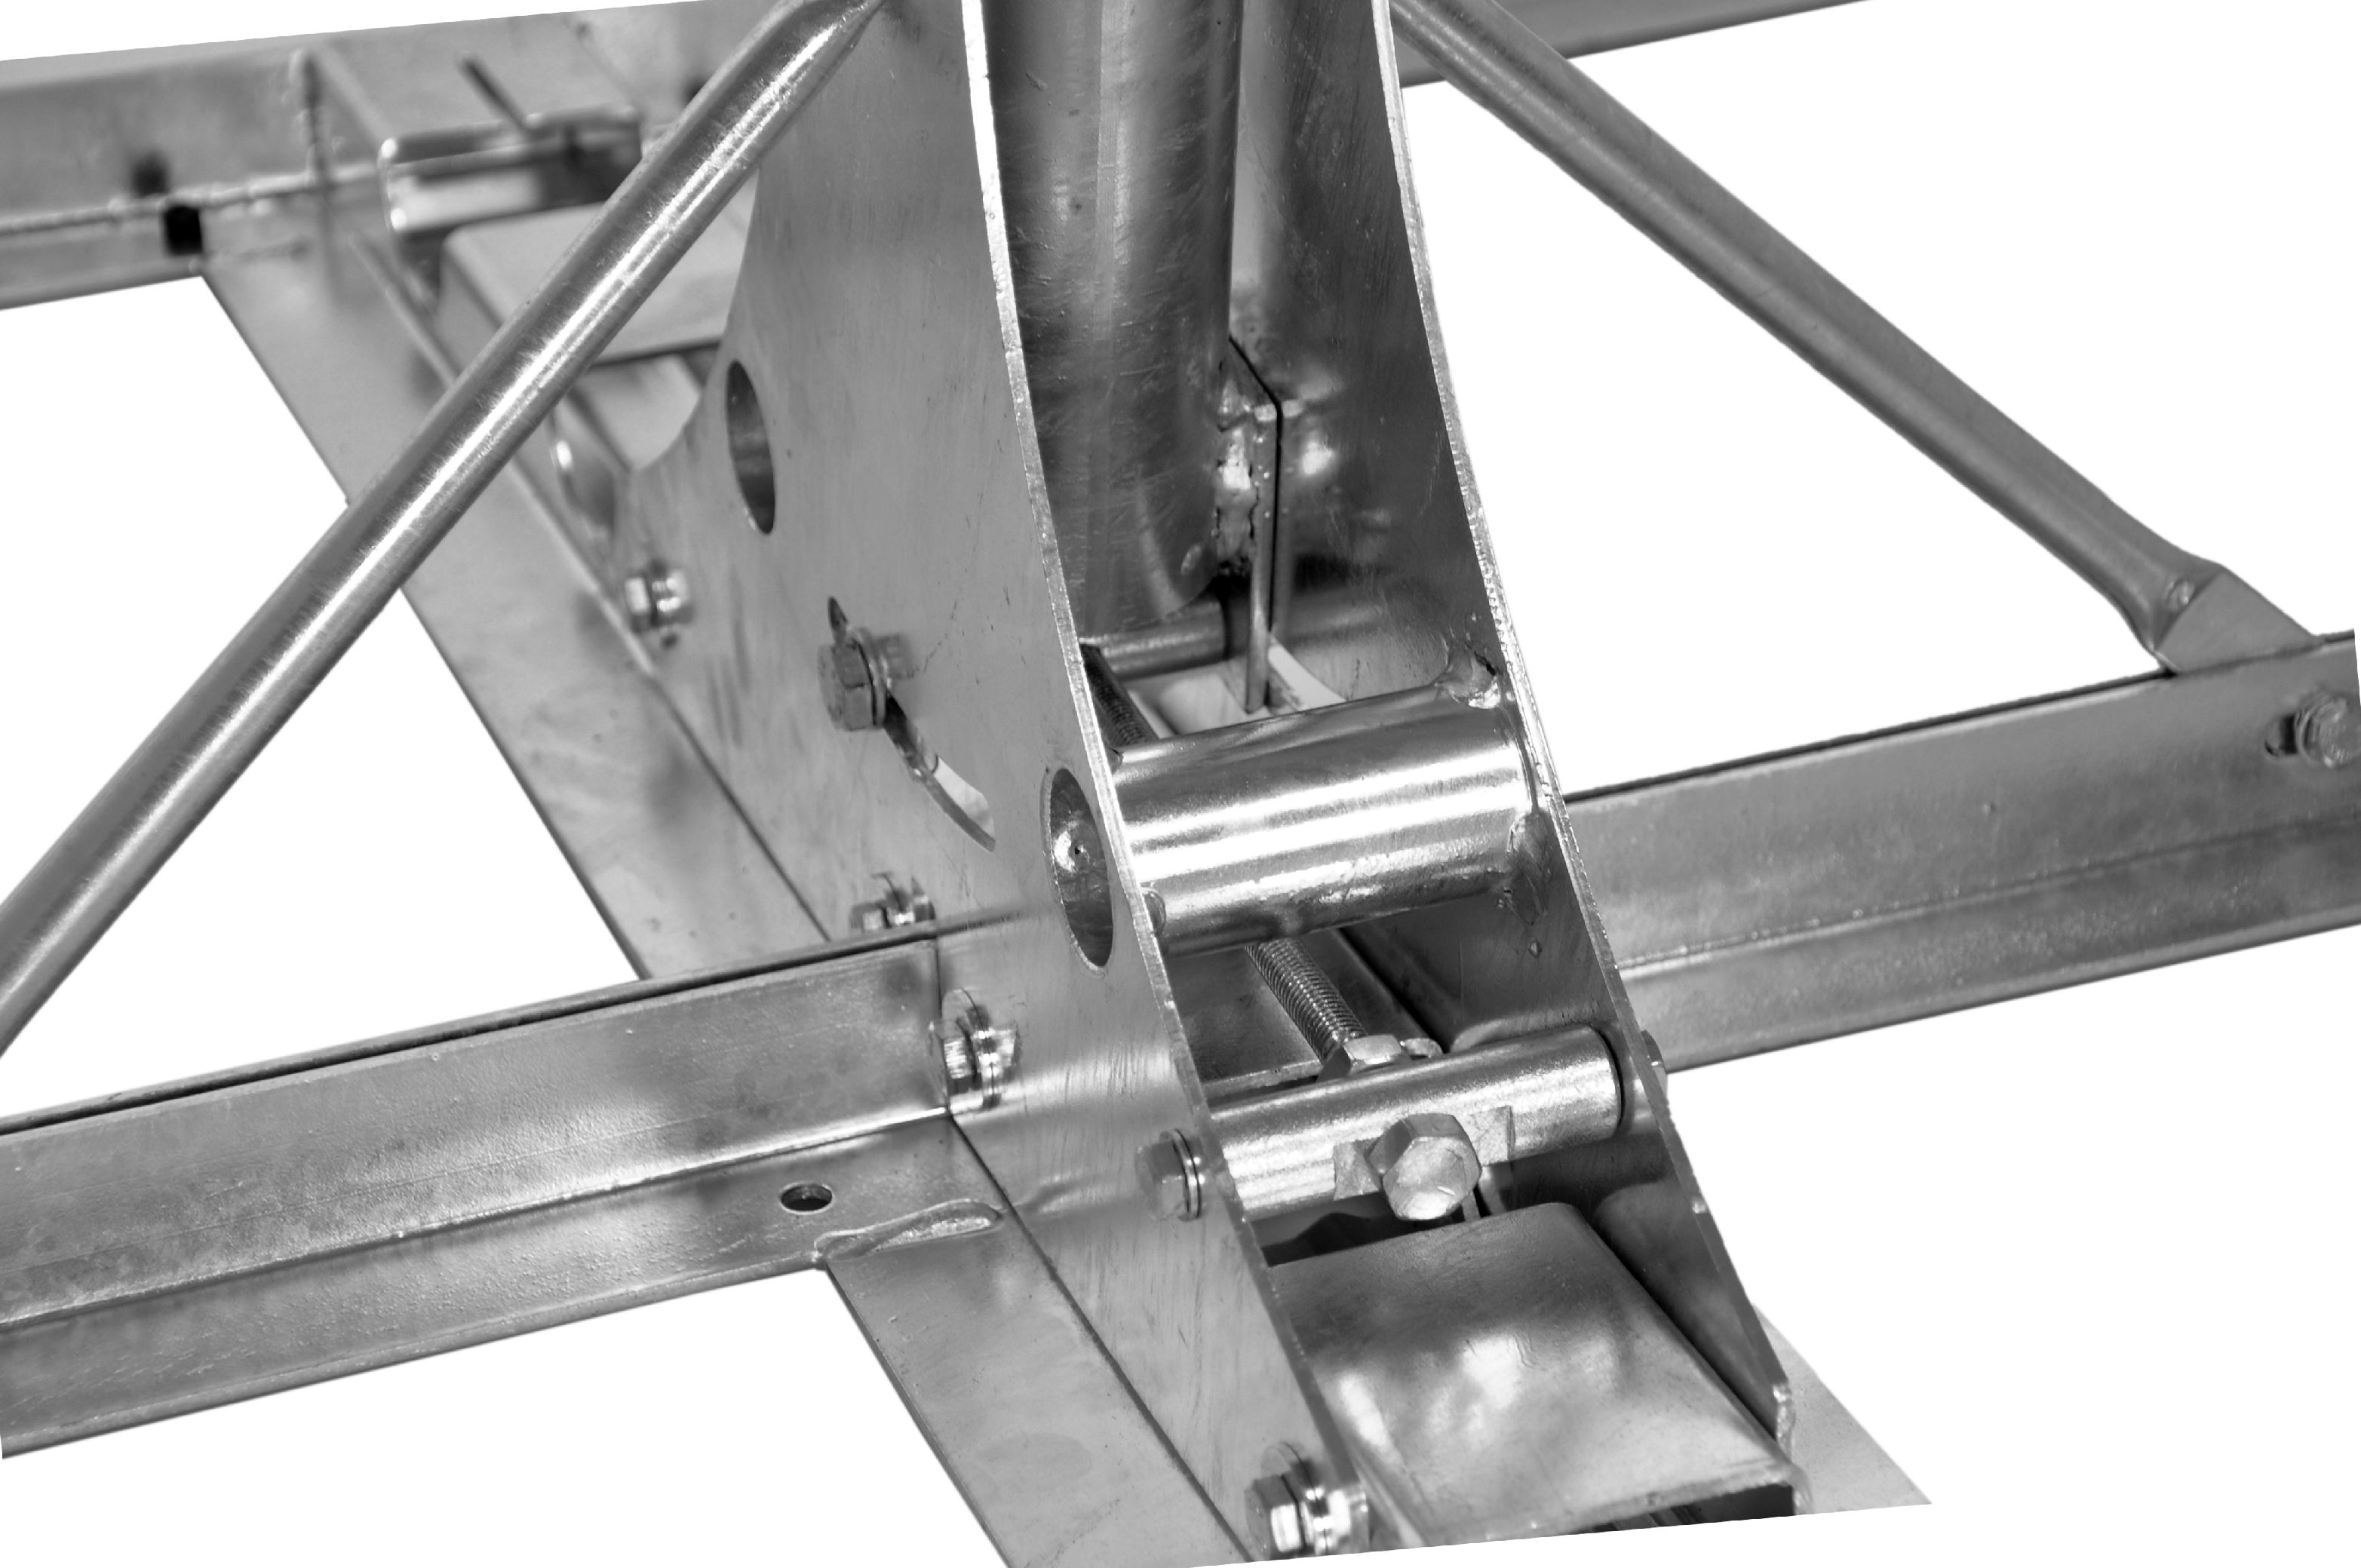 SAT Flachdach-Ständer für 4xBeton 50x50cm, Mast=110cm, Stahl